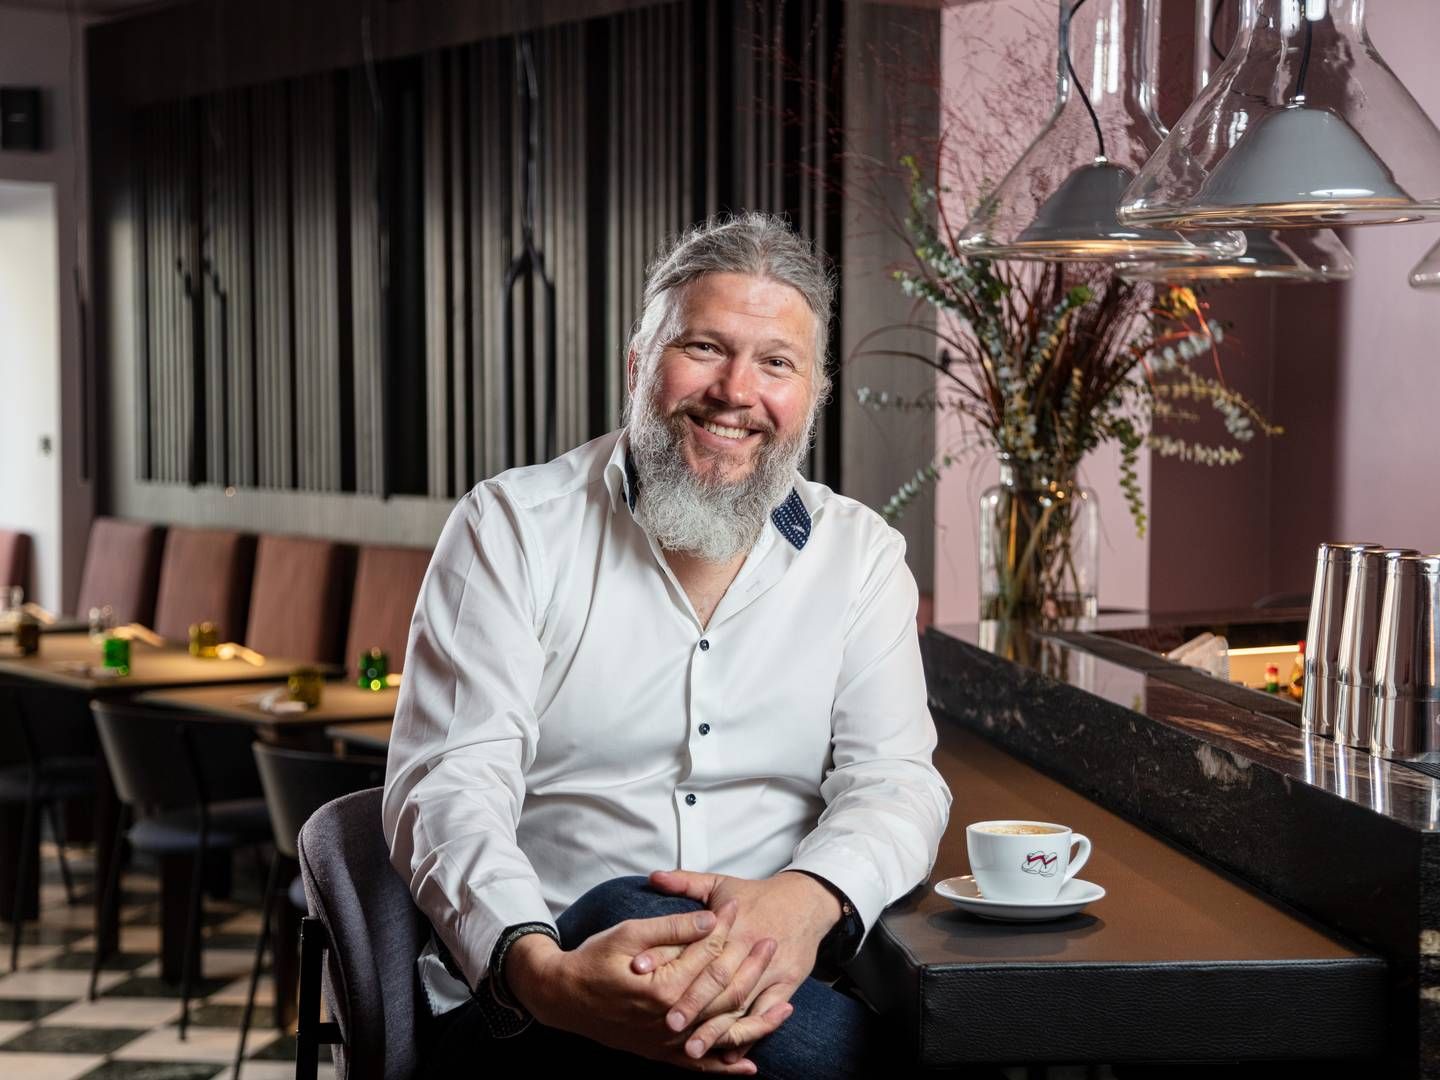 Adm. direktør Andreas Karlsson bliver på sin post i restaurantkæden Sticks’n’Sushi, der til gengæld får en ny kapitalfond i ryggen i form af britiske McWin. | Foto: Sticks'n'sushi / Pr